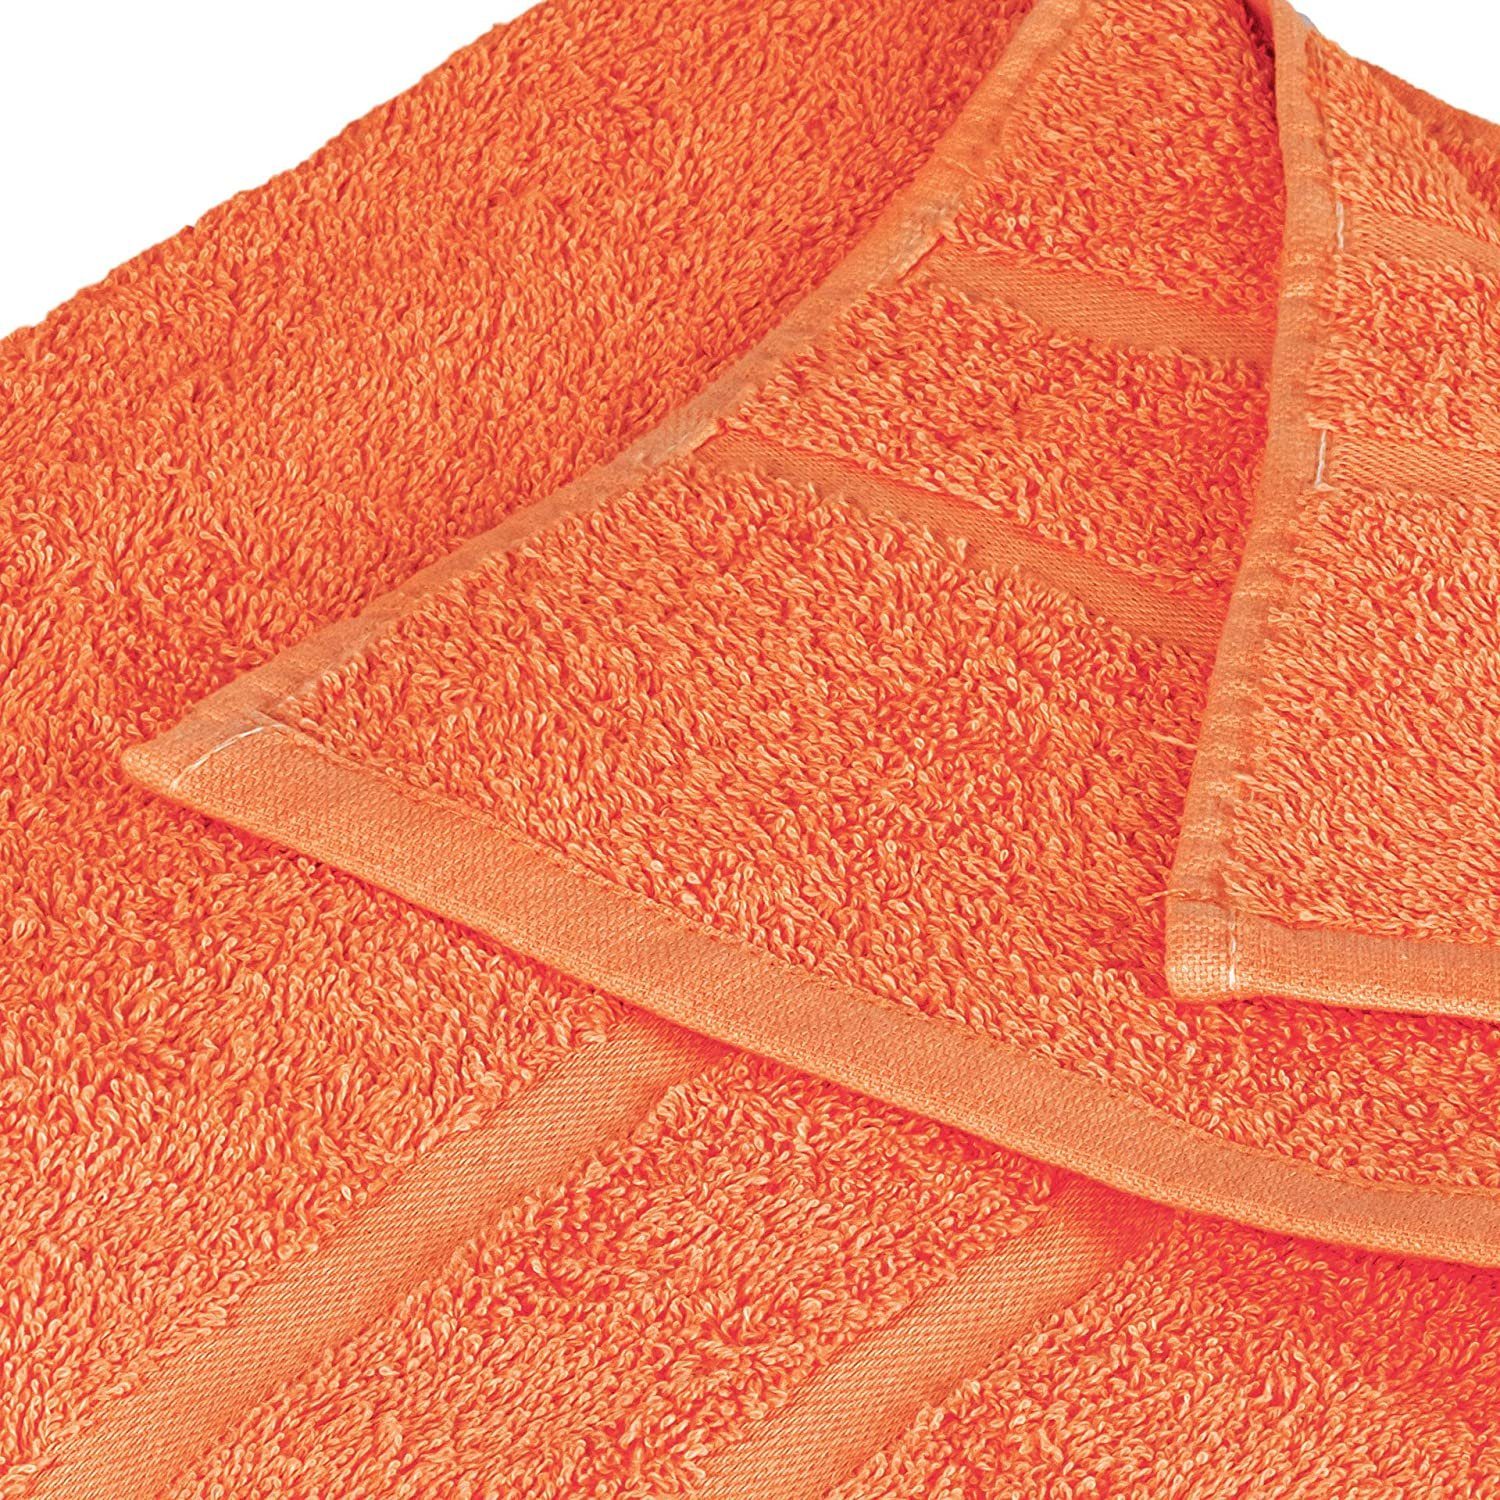 Baumwolle verschiedenen 1x Handtuch 100% (3 in Pack, 500GSM 100% 3er 1x Handtuch als 1x Orange Teilig) StickandShine Gästehandtuch Baumwolle Frottee 500 SET Duschtuch Set Farben GSM Handtuch